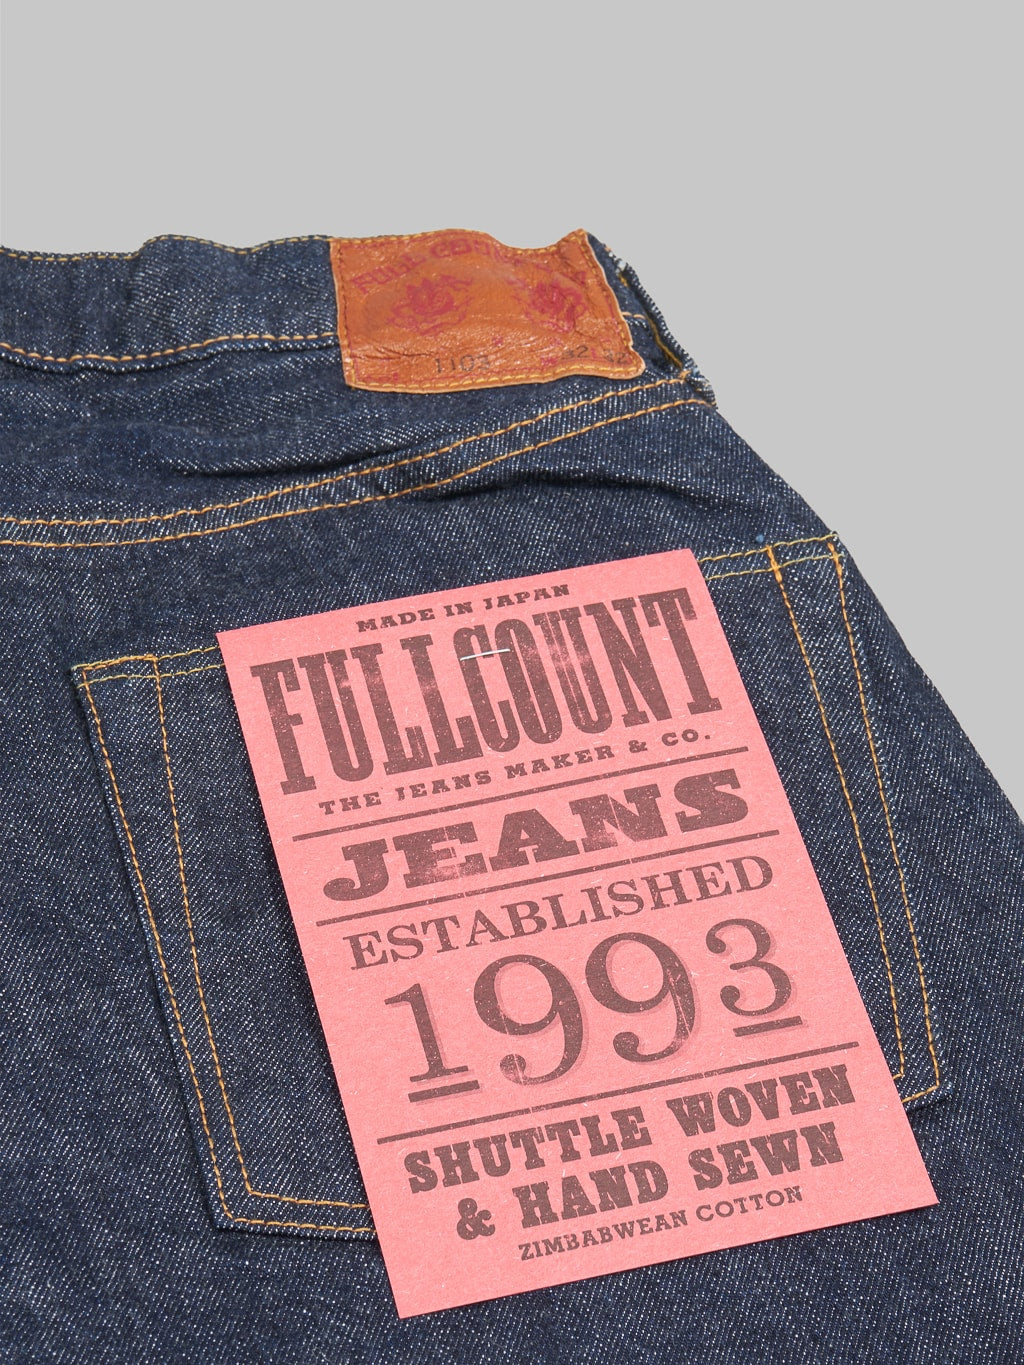 fullcount 1103 clean straight selvedge denim jeans pocket flasher